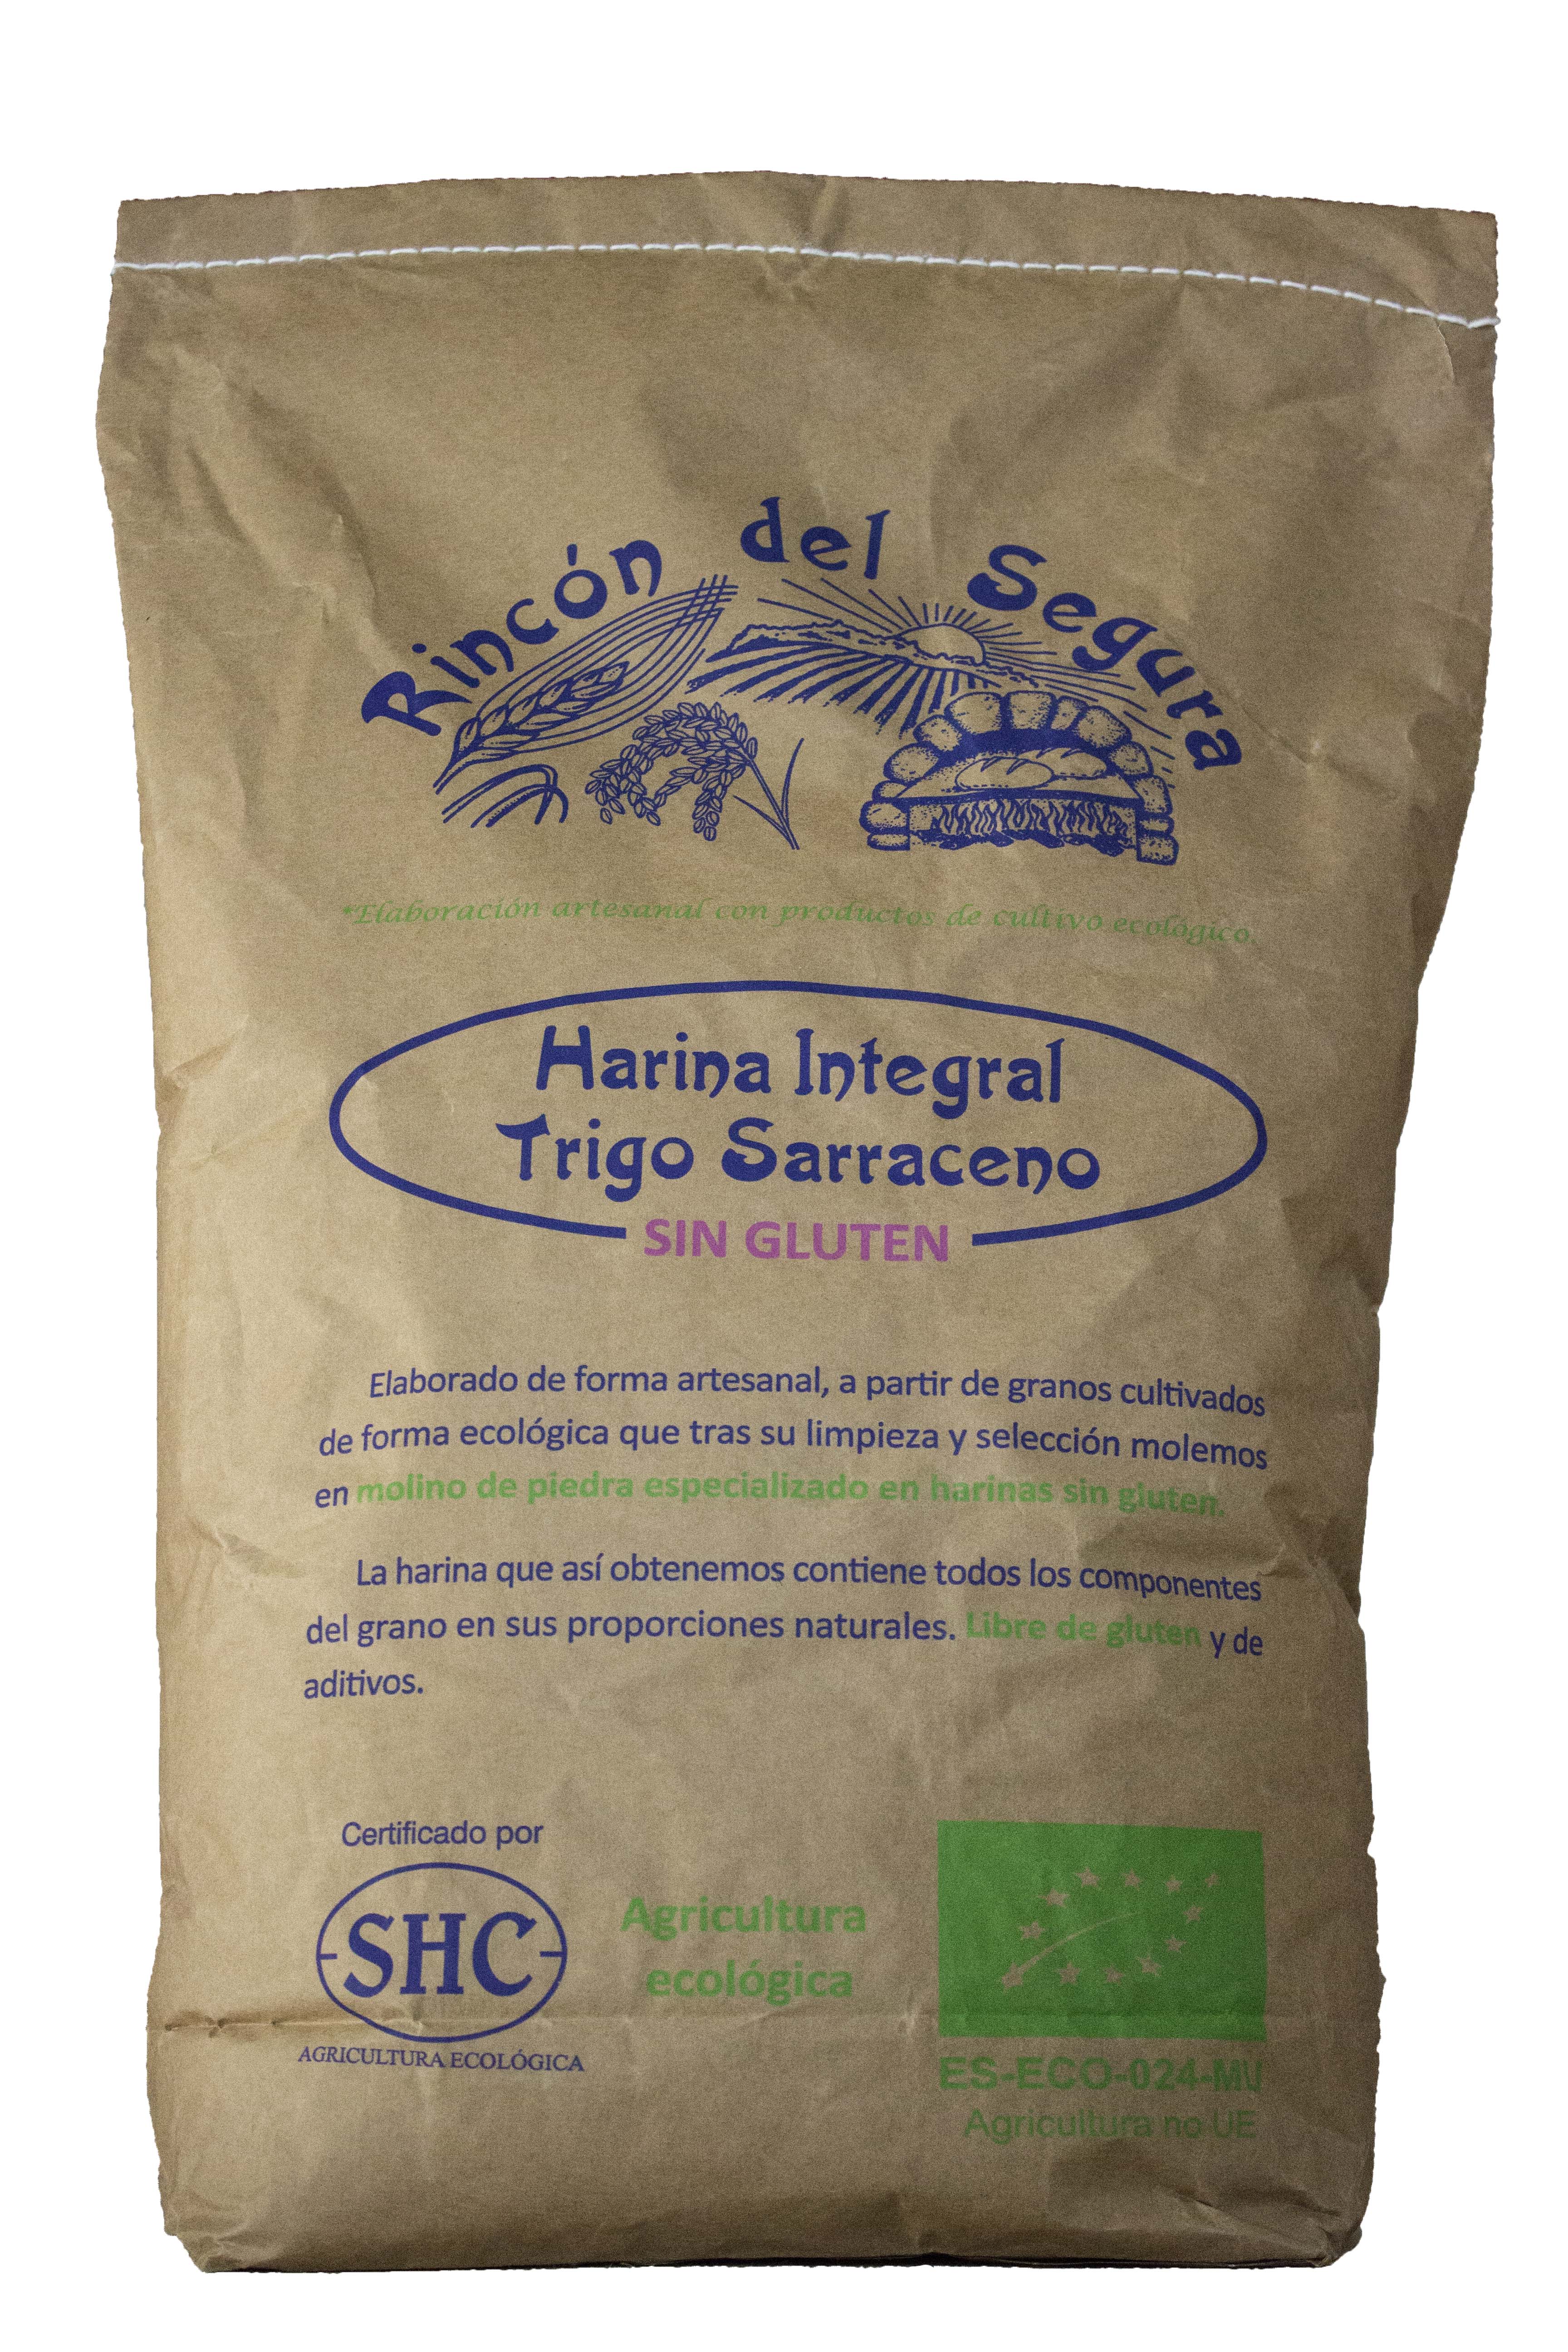 Trigo En Grano Buenahora® 5kg - $ 164.9